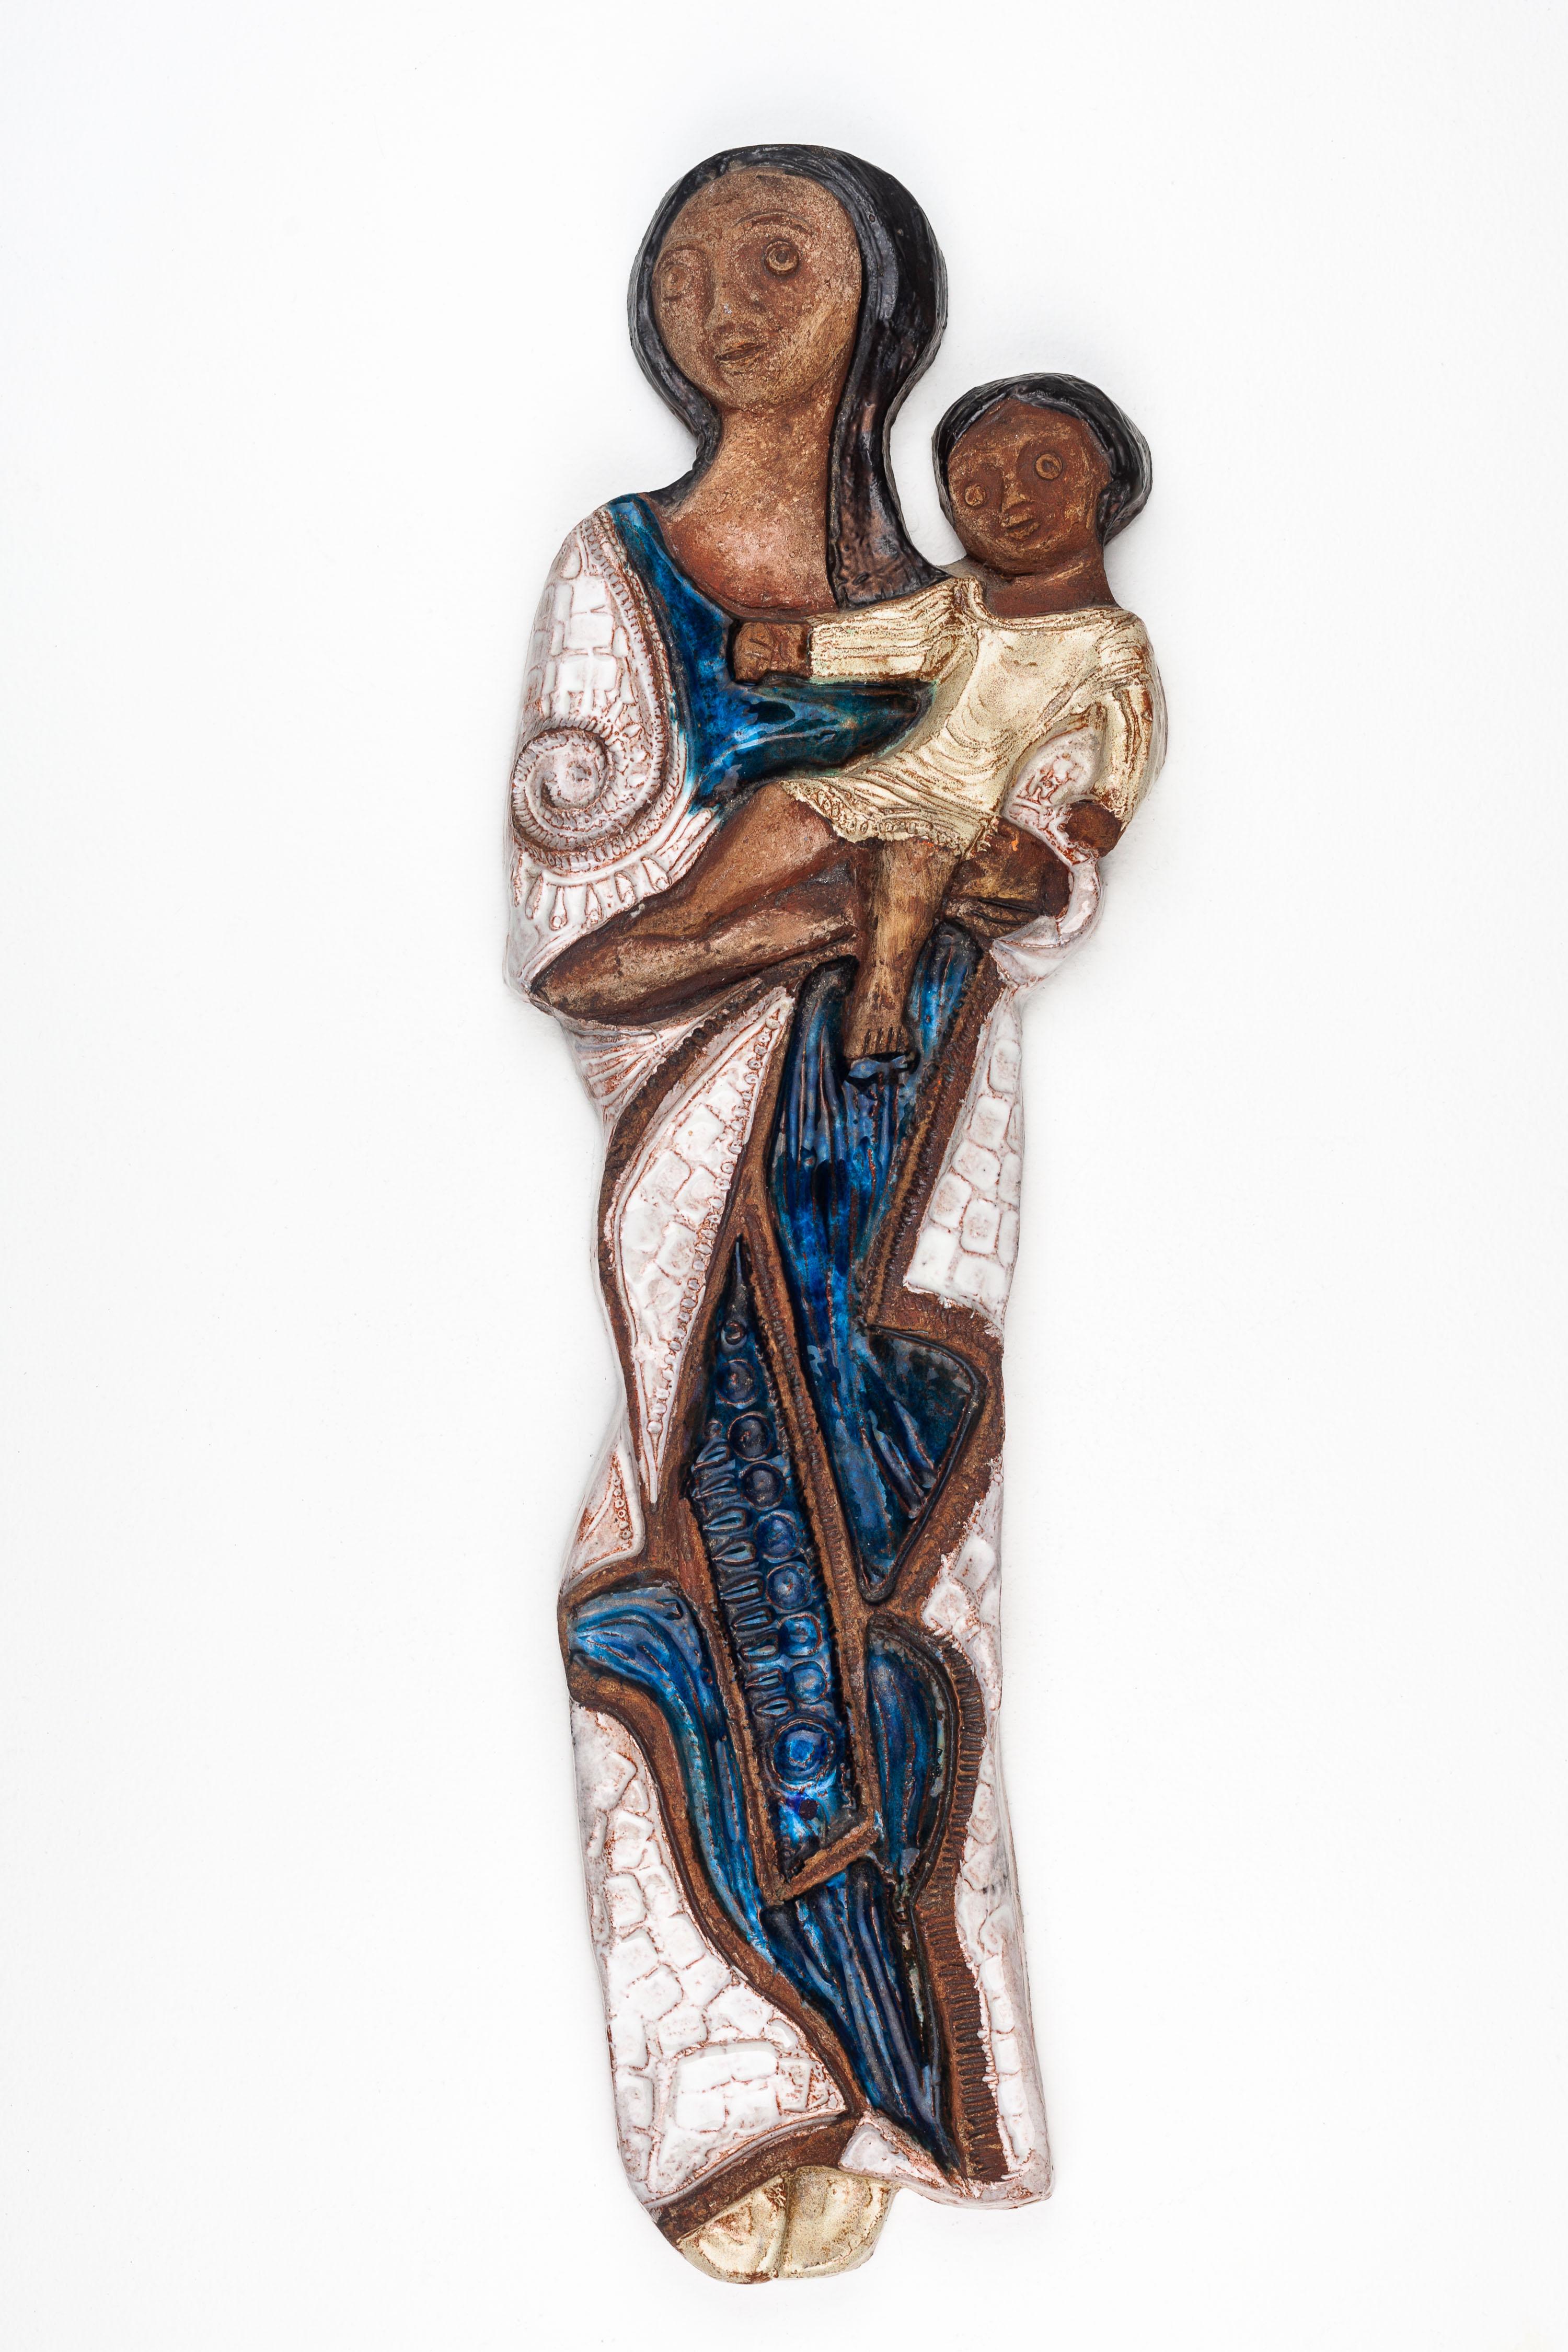 Cette sculpture de la Vierge et de l'Enfant est une œuvre d'art en céramique moderne du milieu du siècle dernier, réalisée à la main par un artiste européen de la poterie. La sculpture présente une représentation stylisée de la Vierge Marie et de